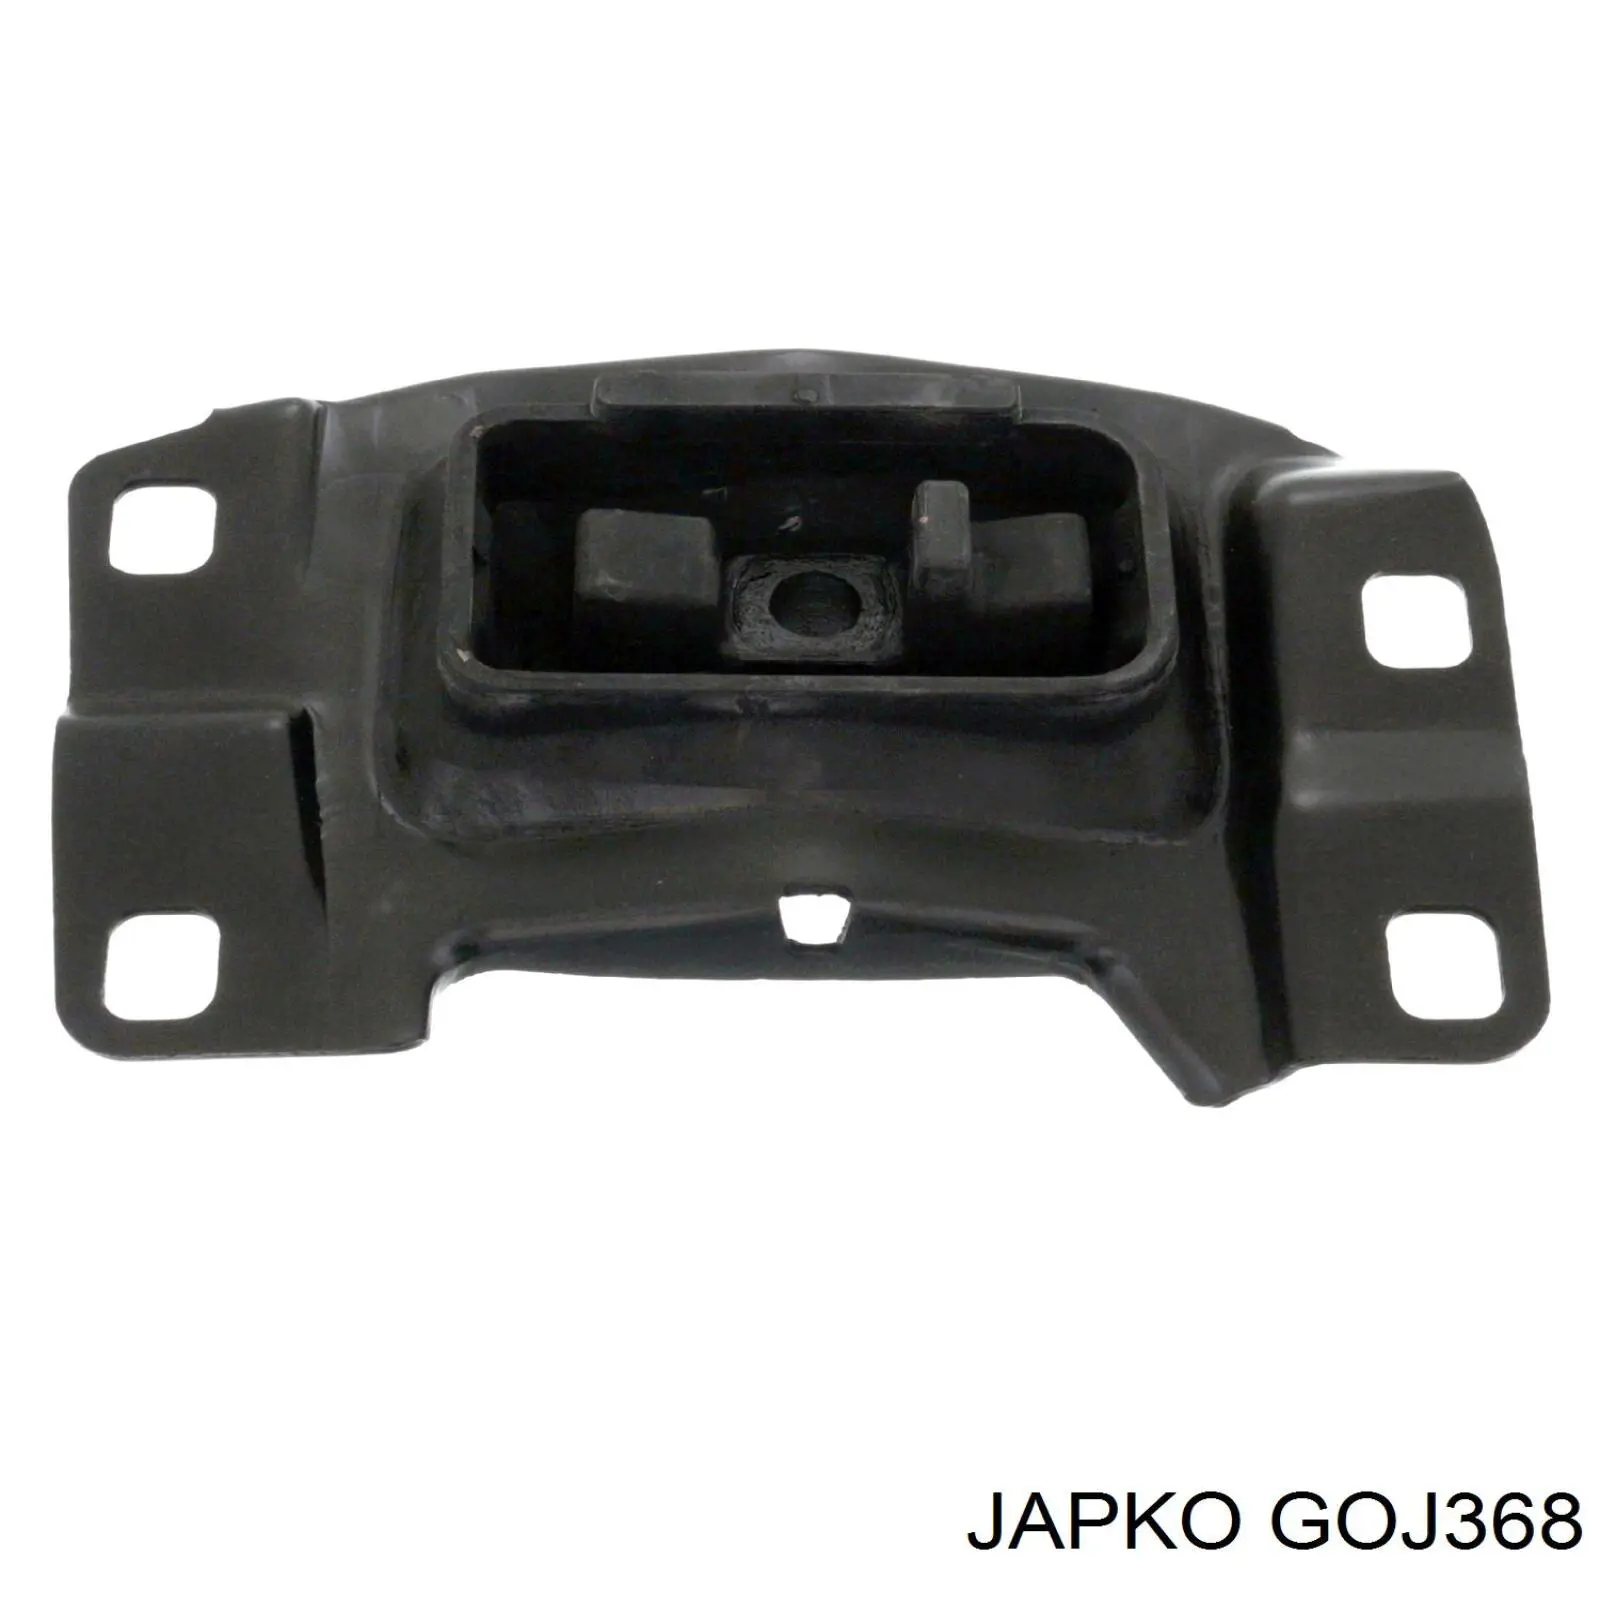 GOJ368 Japko coxim (suporte esquerdo superior de motor)